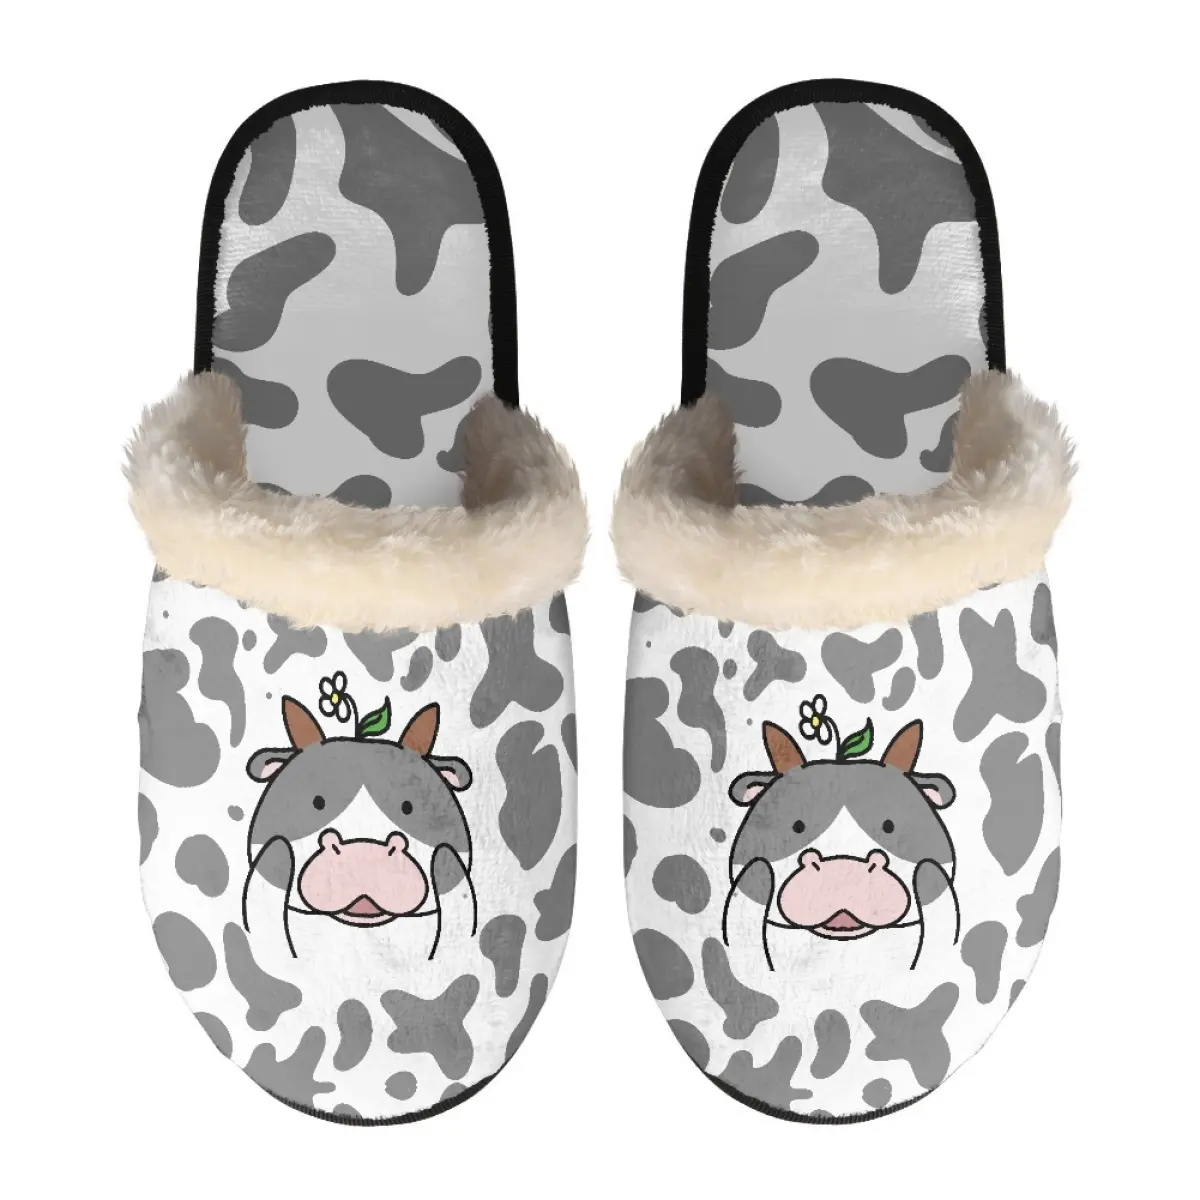 Estampado bajo demanda vaca Toro jirafa perro cebra zapatillas masculinas invierno cálido mujer Zapatillas peludas zapatillas de algodón suave Envío Directo